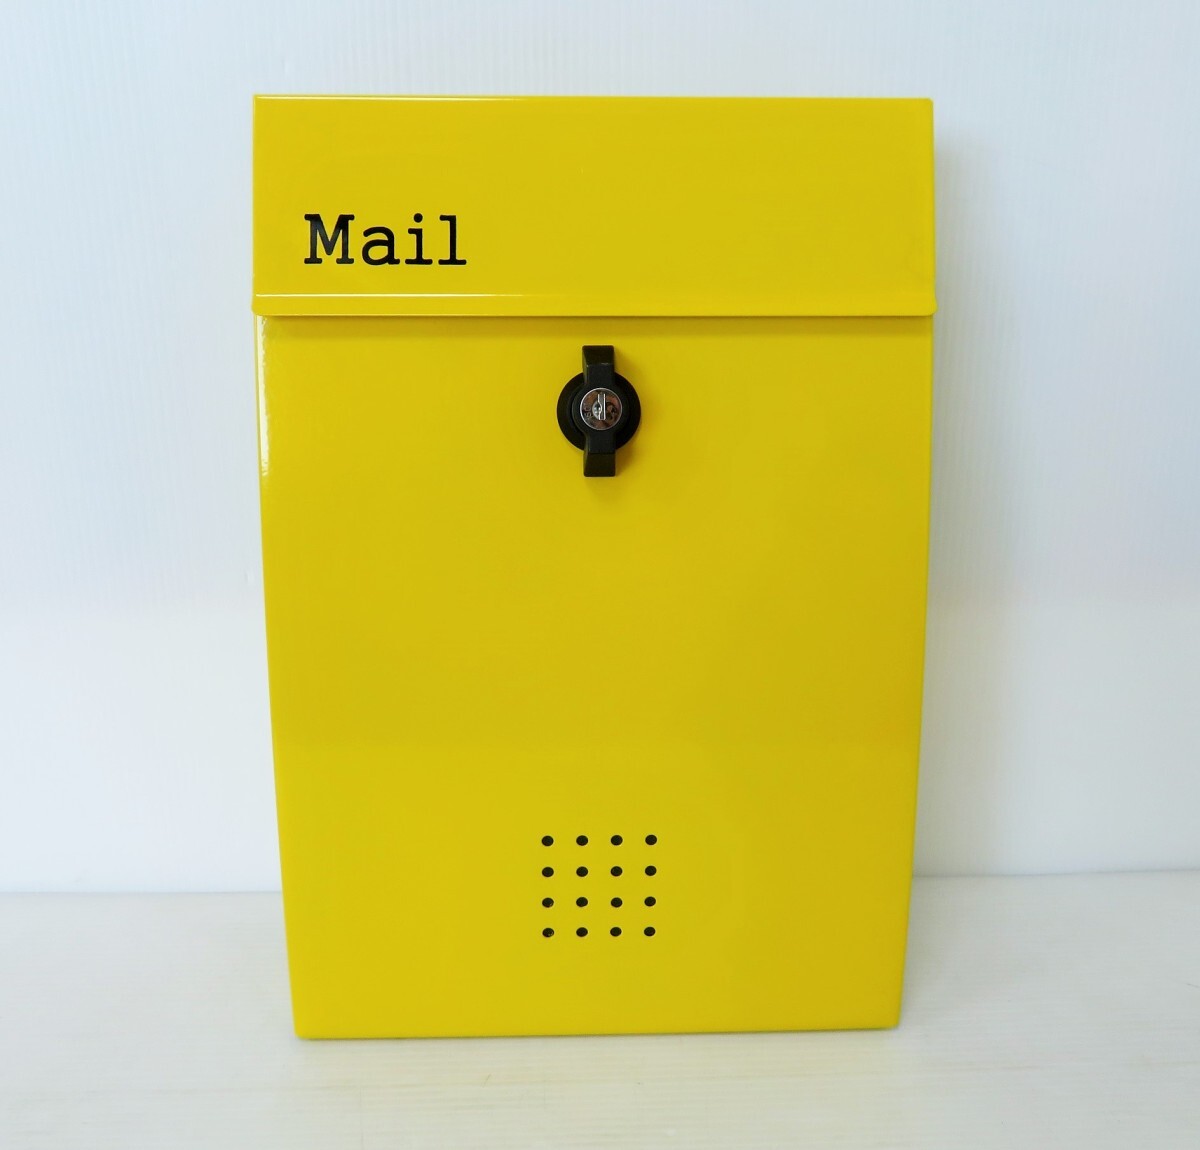 セール6月30日まで 郵便ポスト郵便受けおしゃれかわいい人気北欧メールボックス壁掛けプレミアムステンレスイエロー黄色ポストpm136_画像1